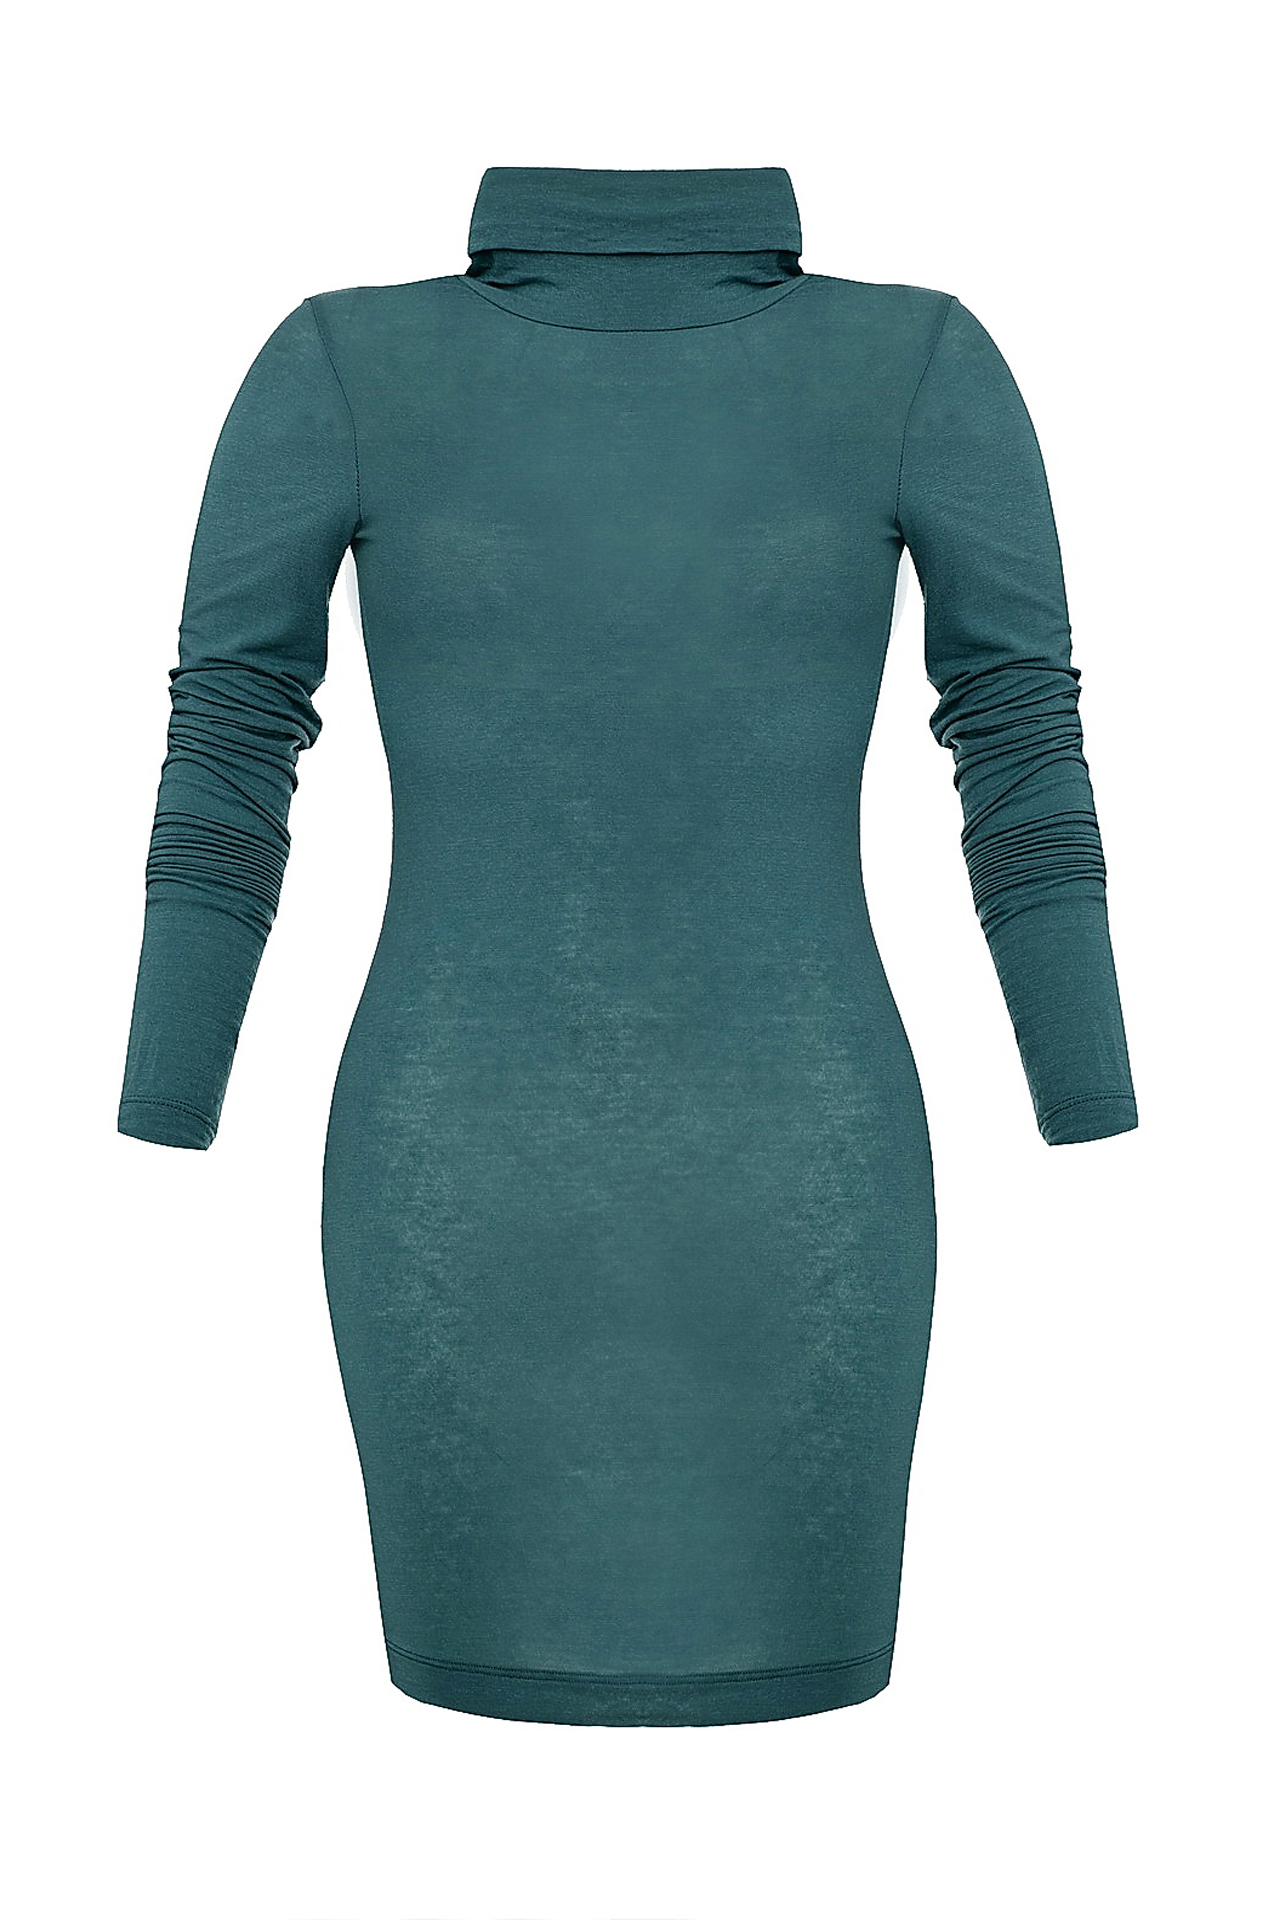 Одежда женская Водолазка NORTHLAND (US0223/11.2). Купить за 2800 руб.